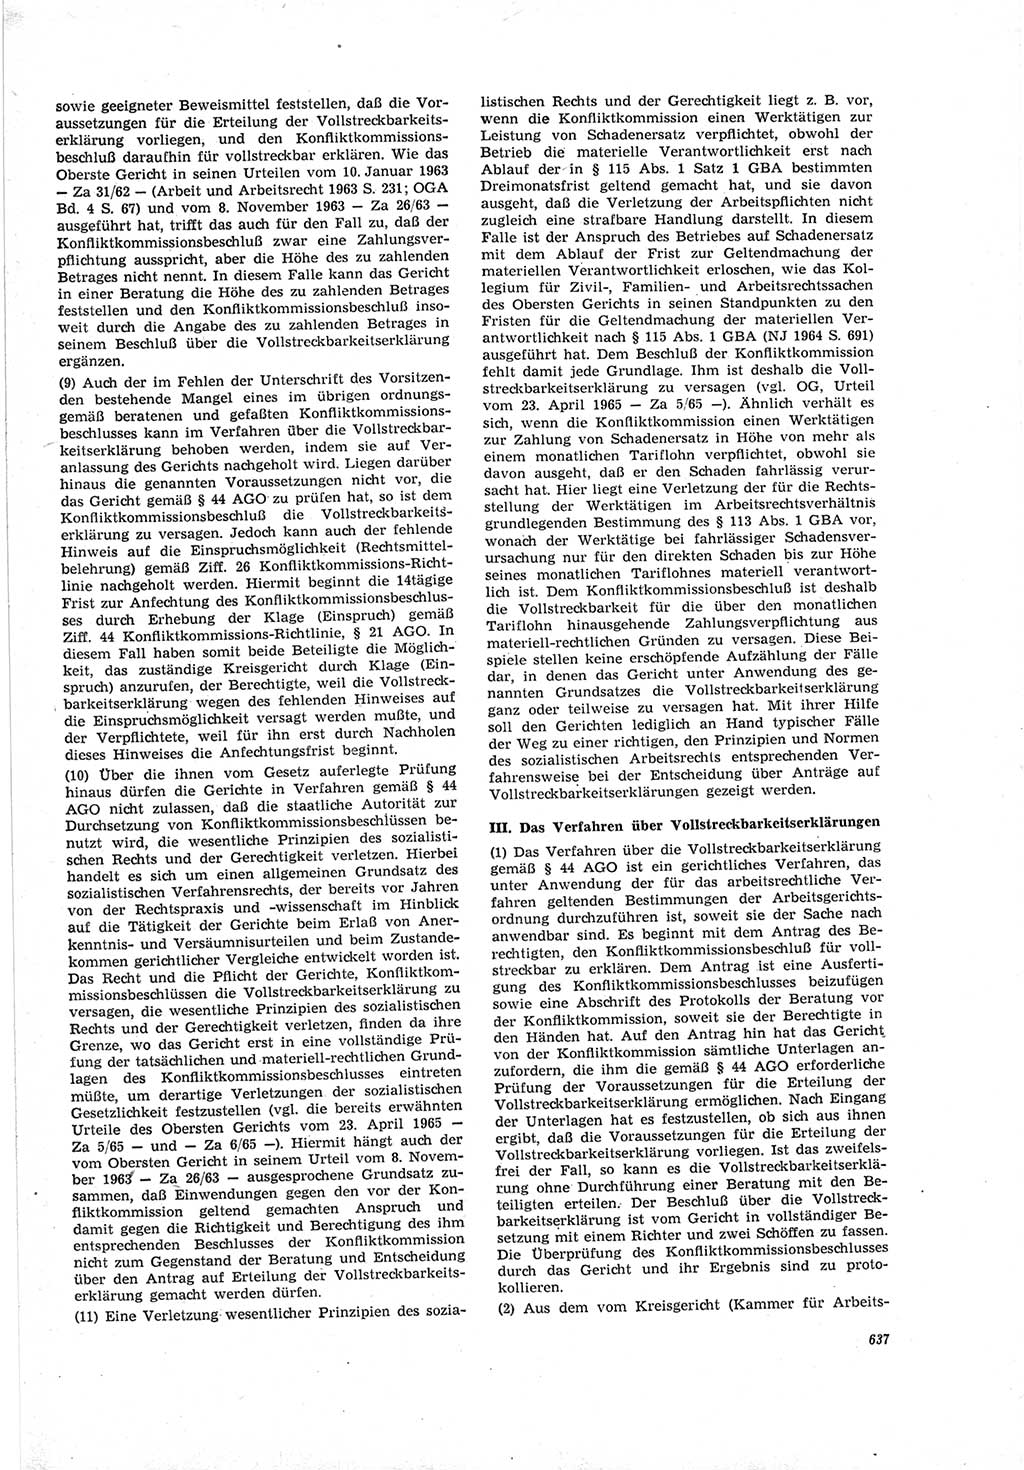 Neue Justiz (NJ), Zeitschrift für Recht und Rechtswissenschaft [Deutsche Demokratische Republik (DDR)], 19. Jahrgang 1965, Seite 637 (NJ DDR 1965, S. 637)